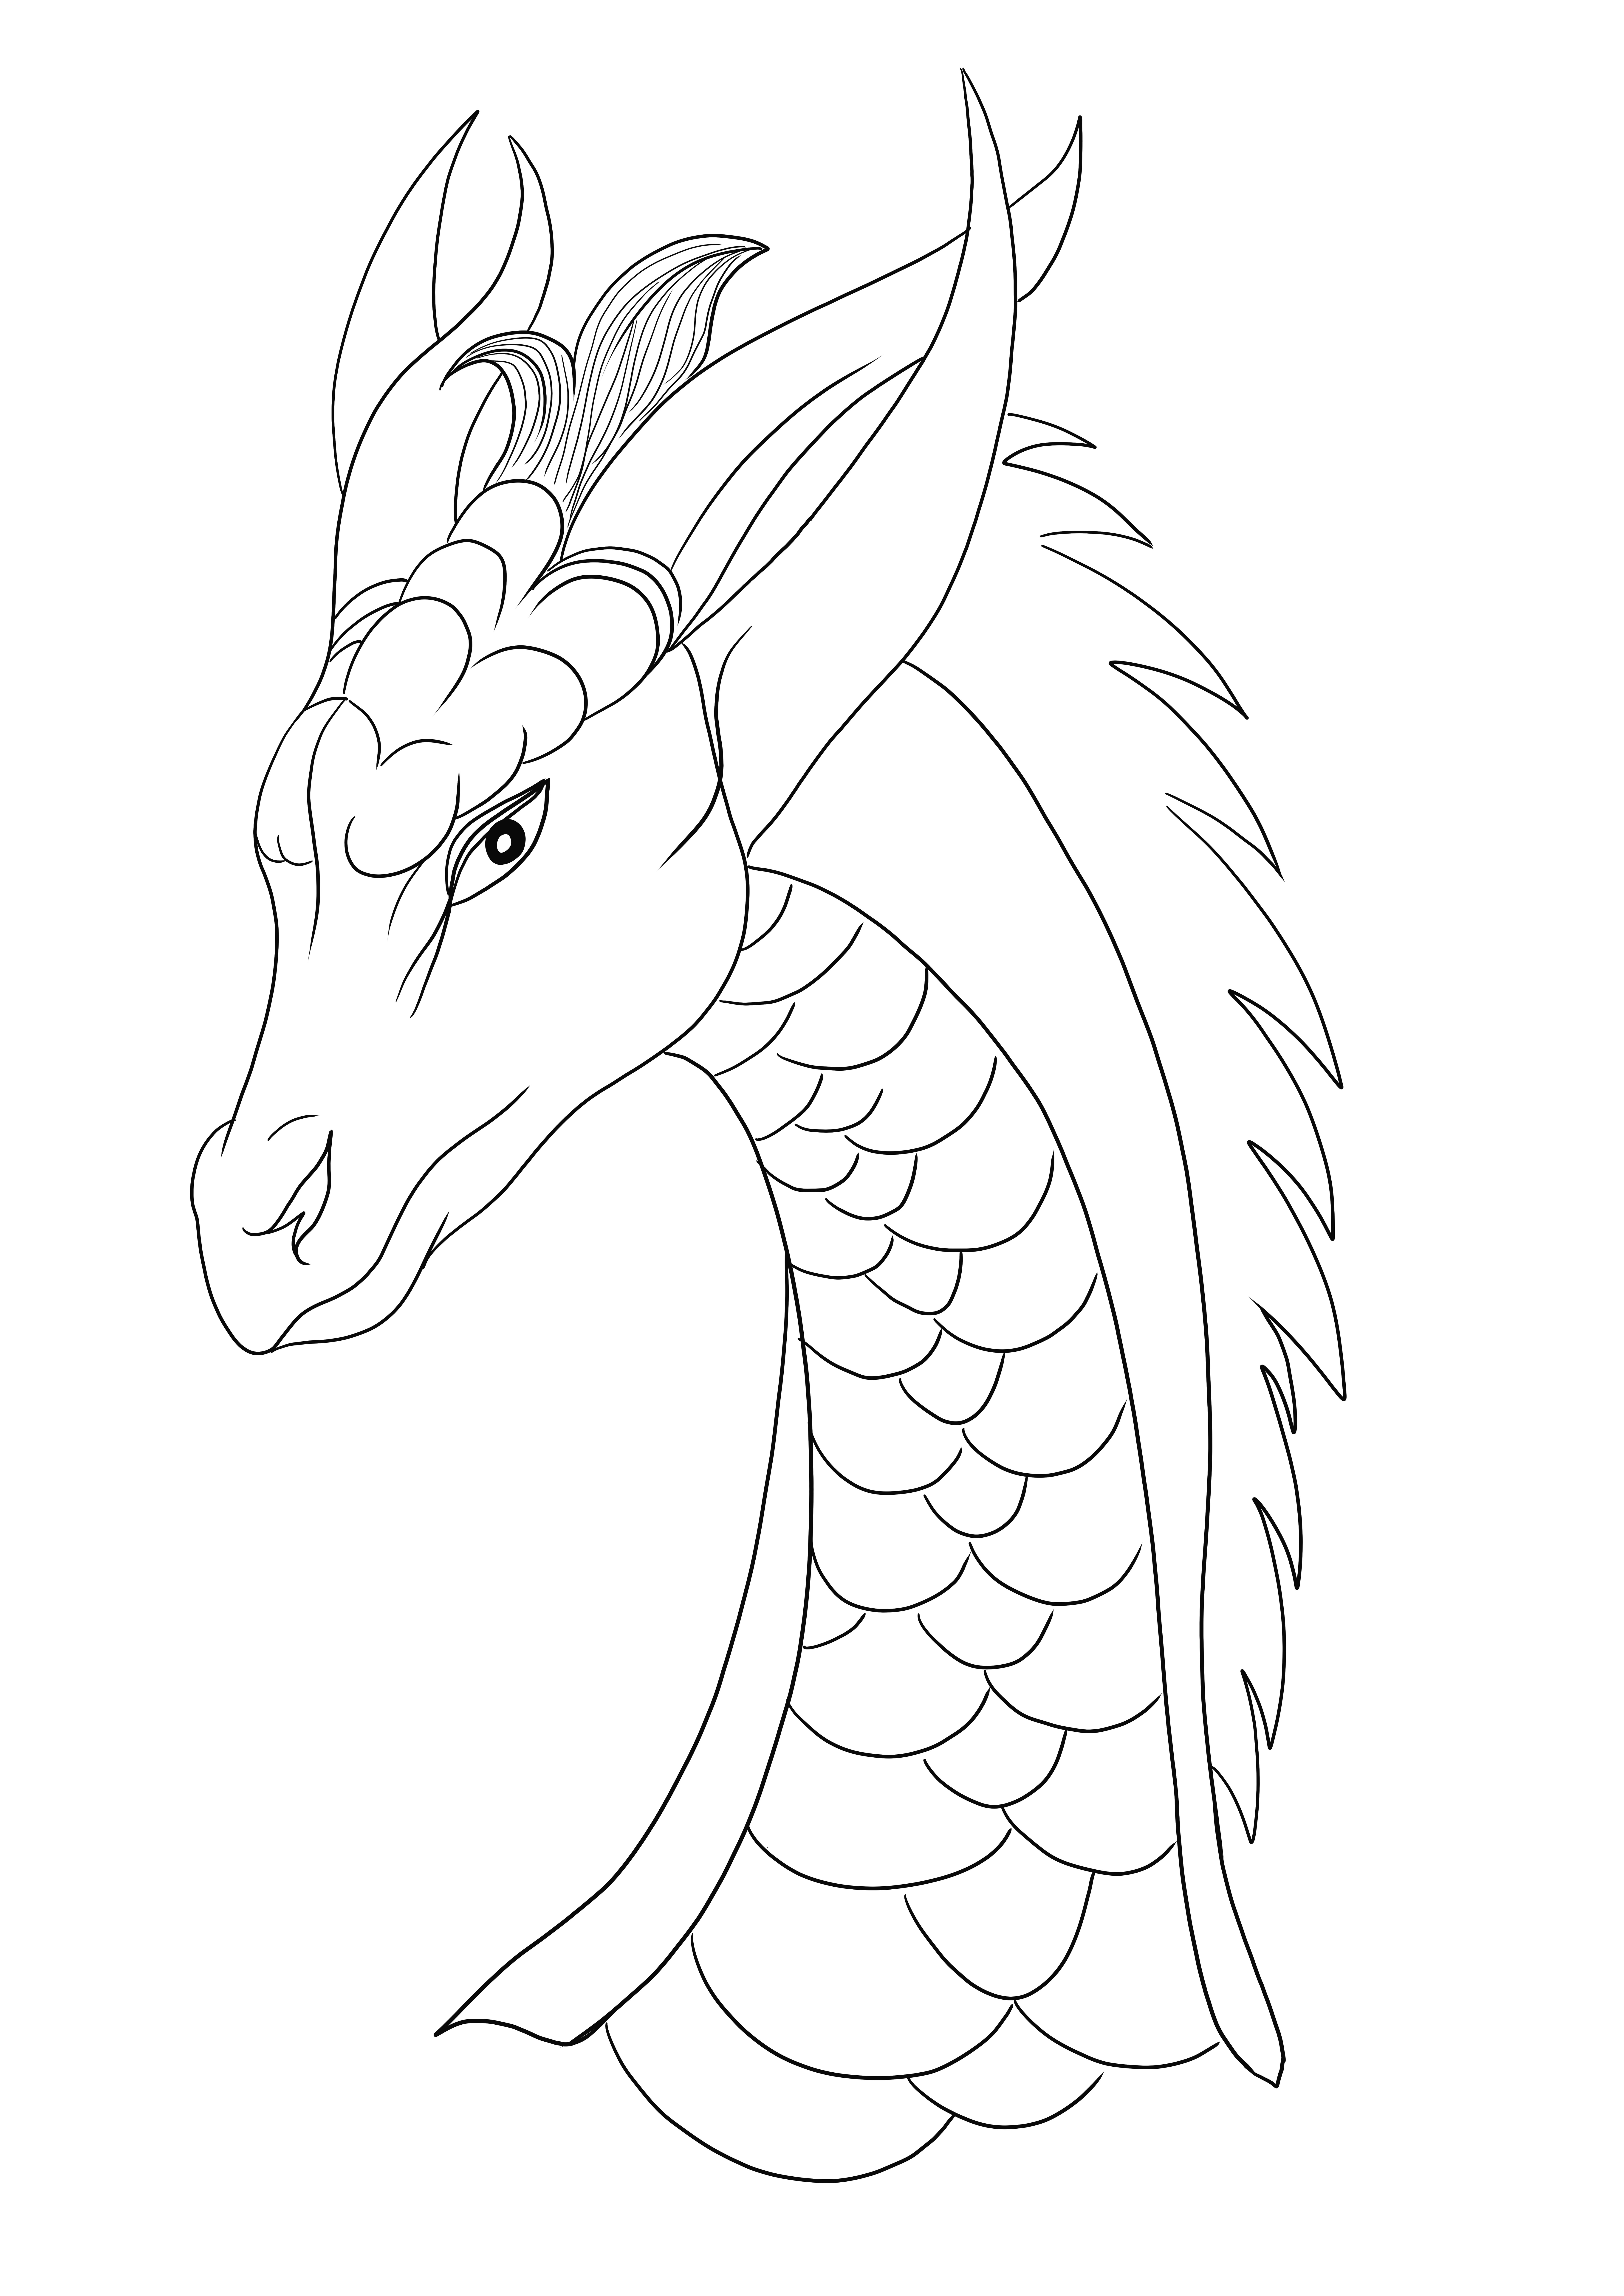 O femeie dragon drăguț arată îngrijorată, deoarece este liberă să fie colorată și imprimată